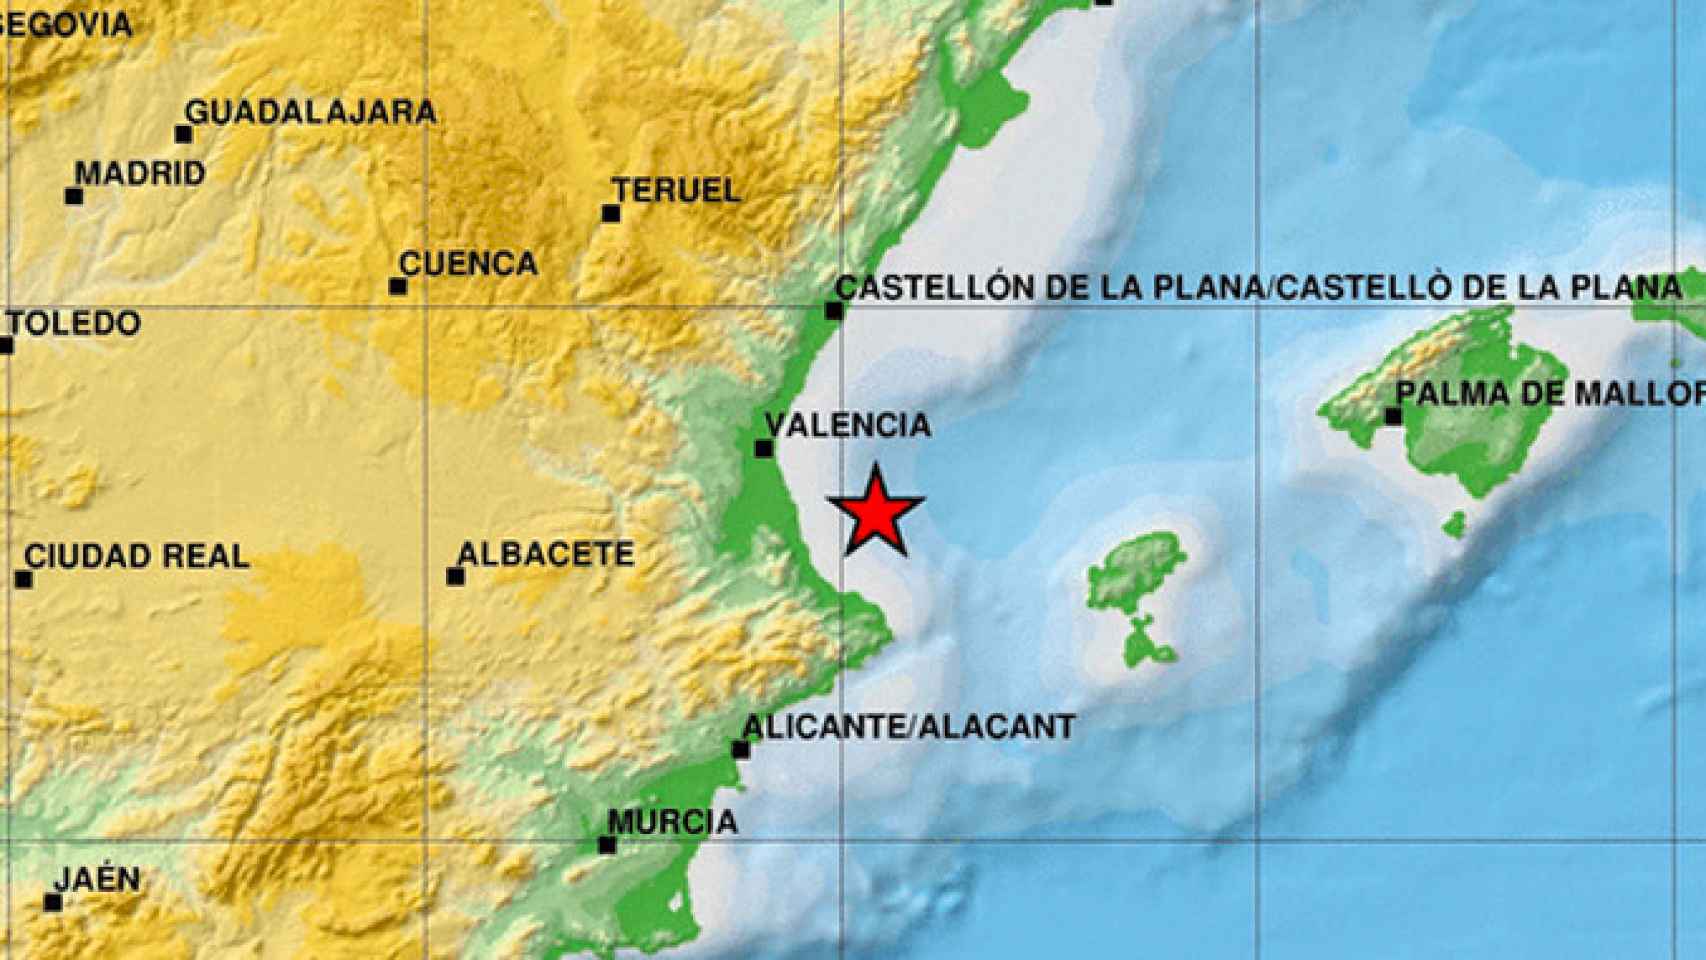 Mapa con una estrella que marca el epicentro del terremoto que ha sacudido la Comunidad Valenciana / IGN